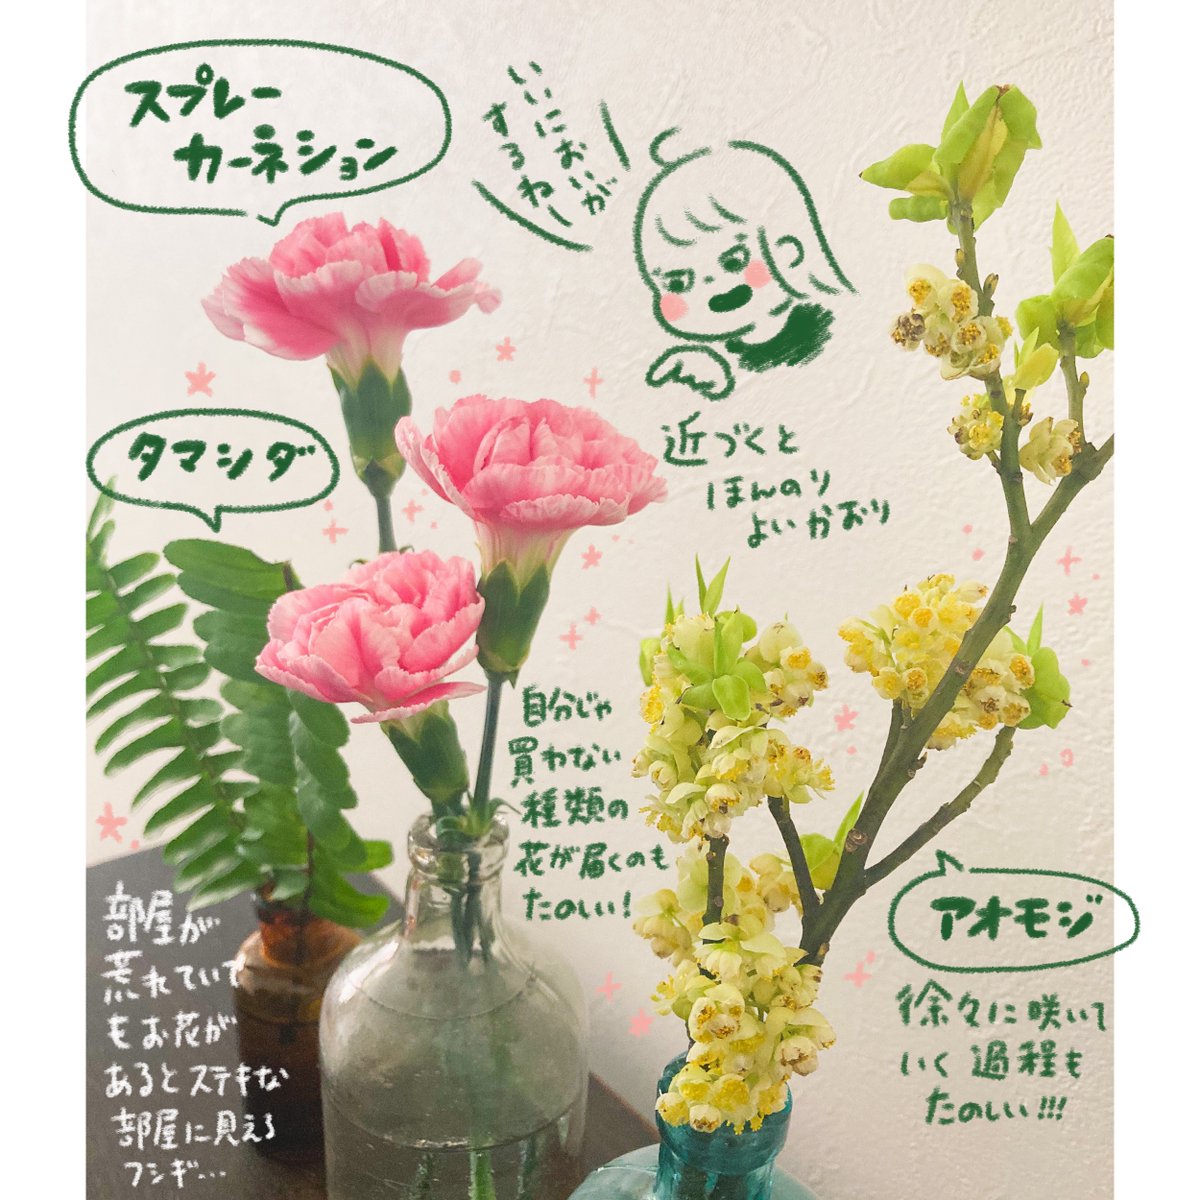 子供のおもちゃで部屋が荒れてても、お花が飾ってあるといい部屋に見える不思議…💐

bloomee(@bloomee_jp)

👇公式サイト👇
https://t.co/KqoIZPM0Mn…

#ブルーミー #bloomee #お花の定期便 #お花のサブスク #PR 